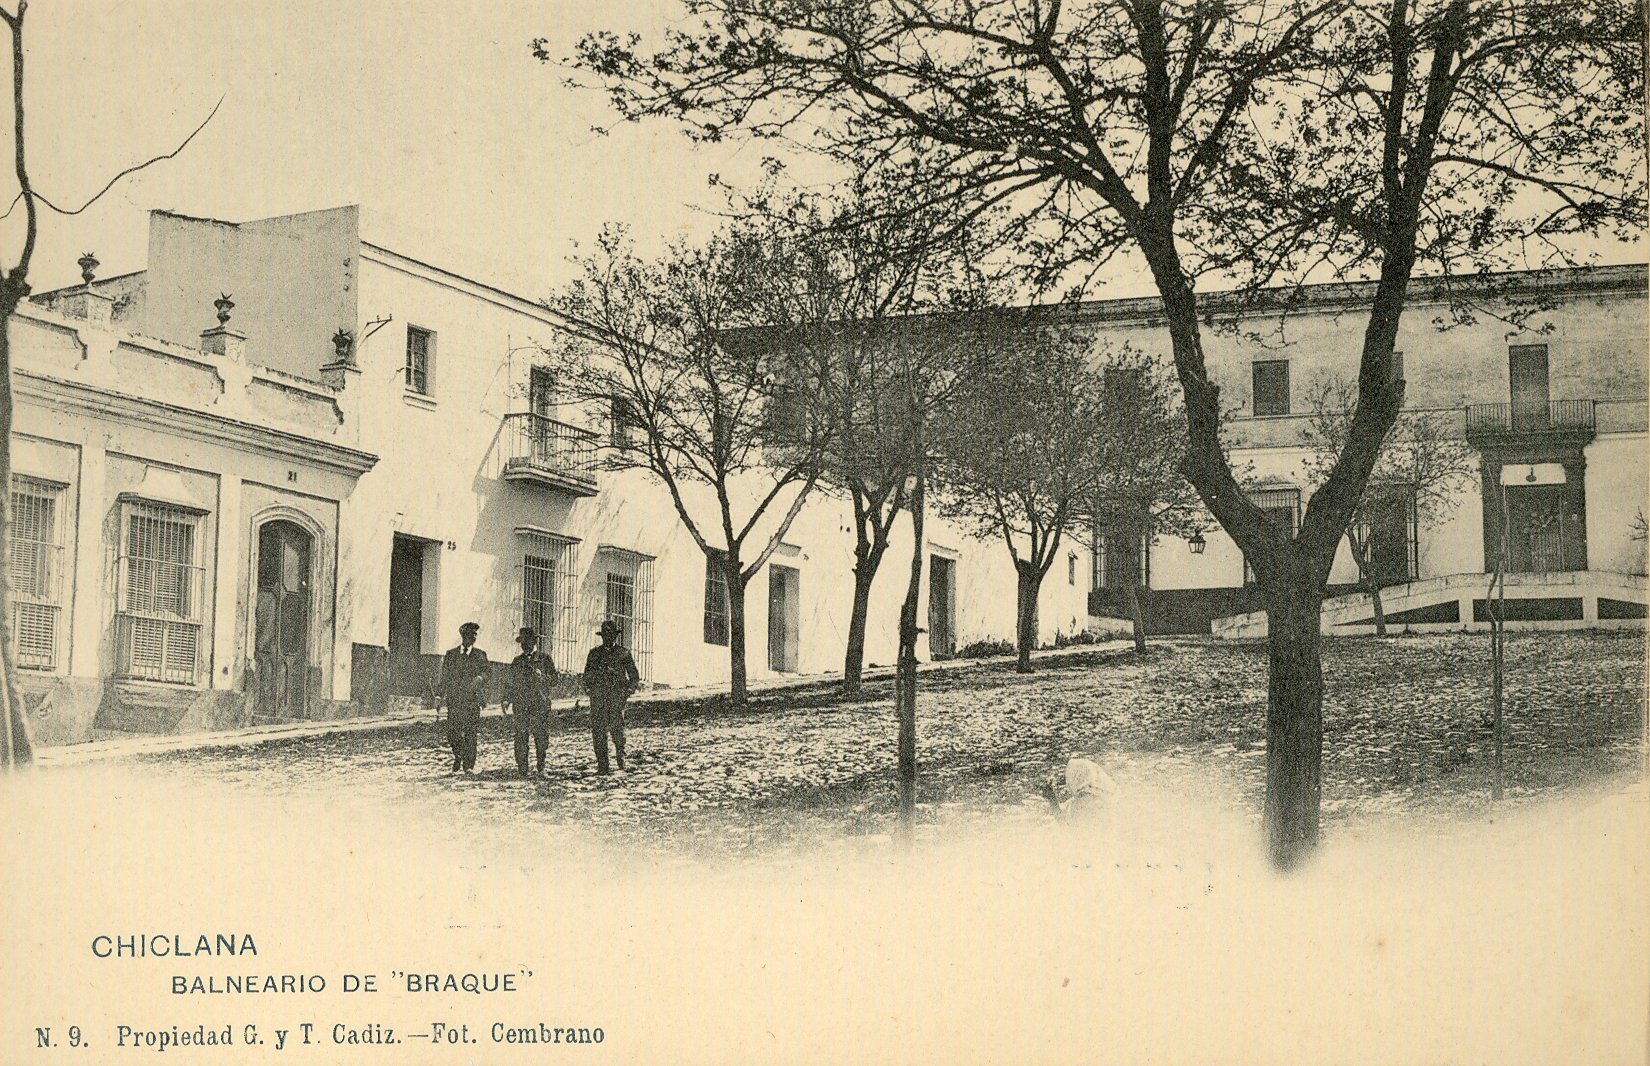 CHICLANA: Balneario de Braque.1903 (DJ07606)